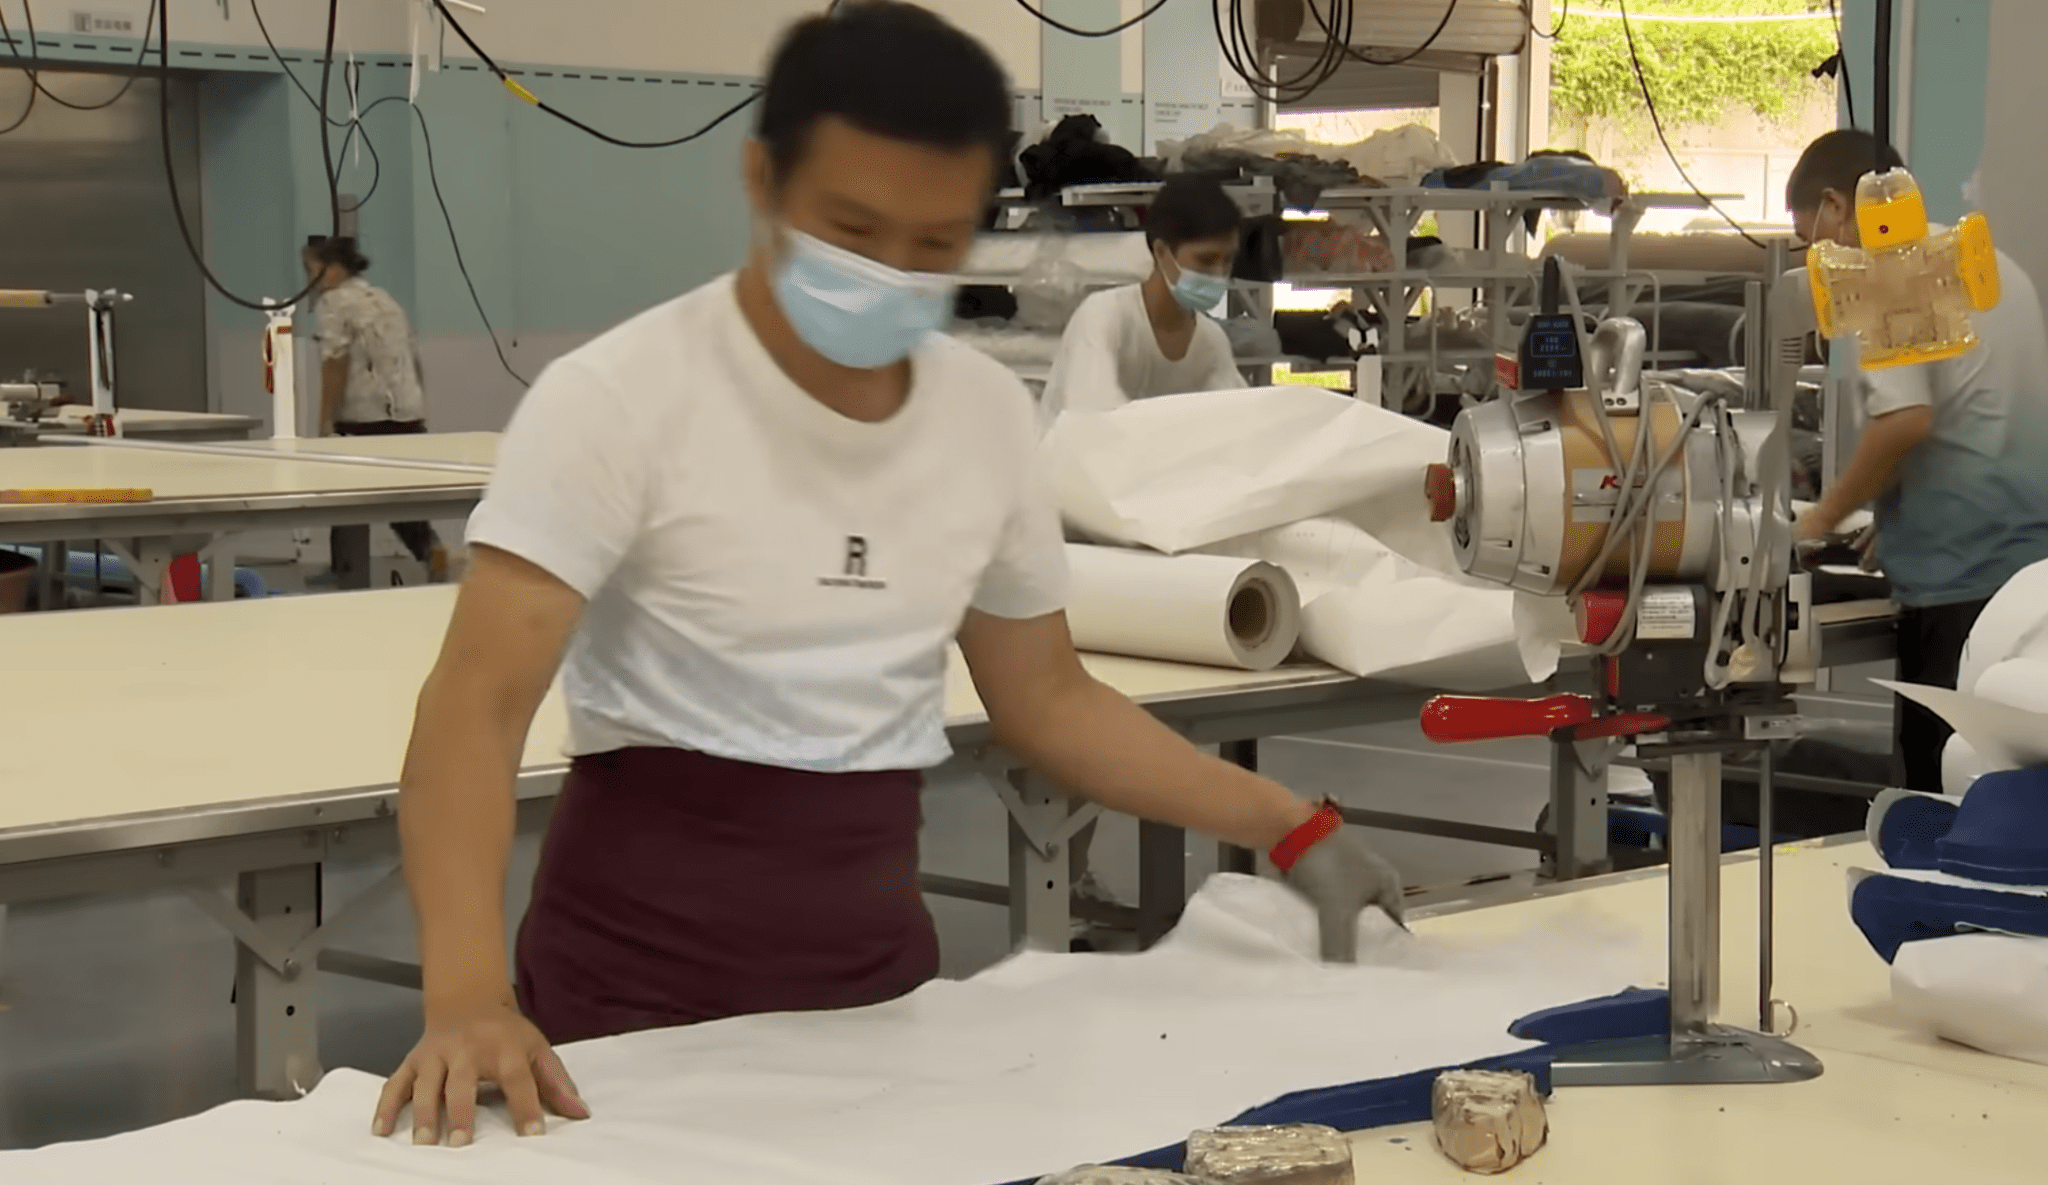 Tøj fremstillet i Kina